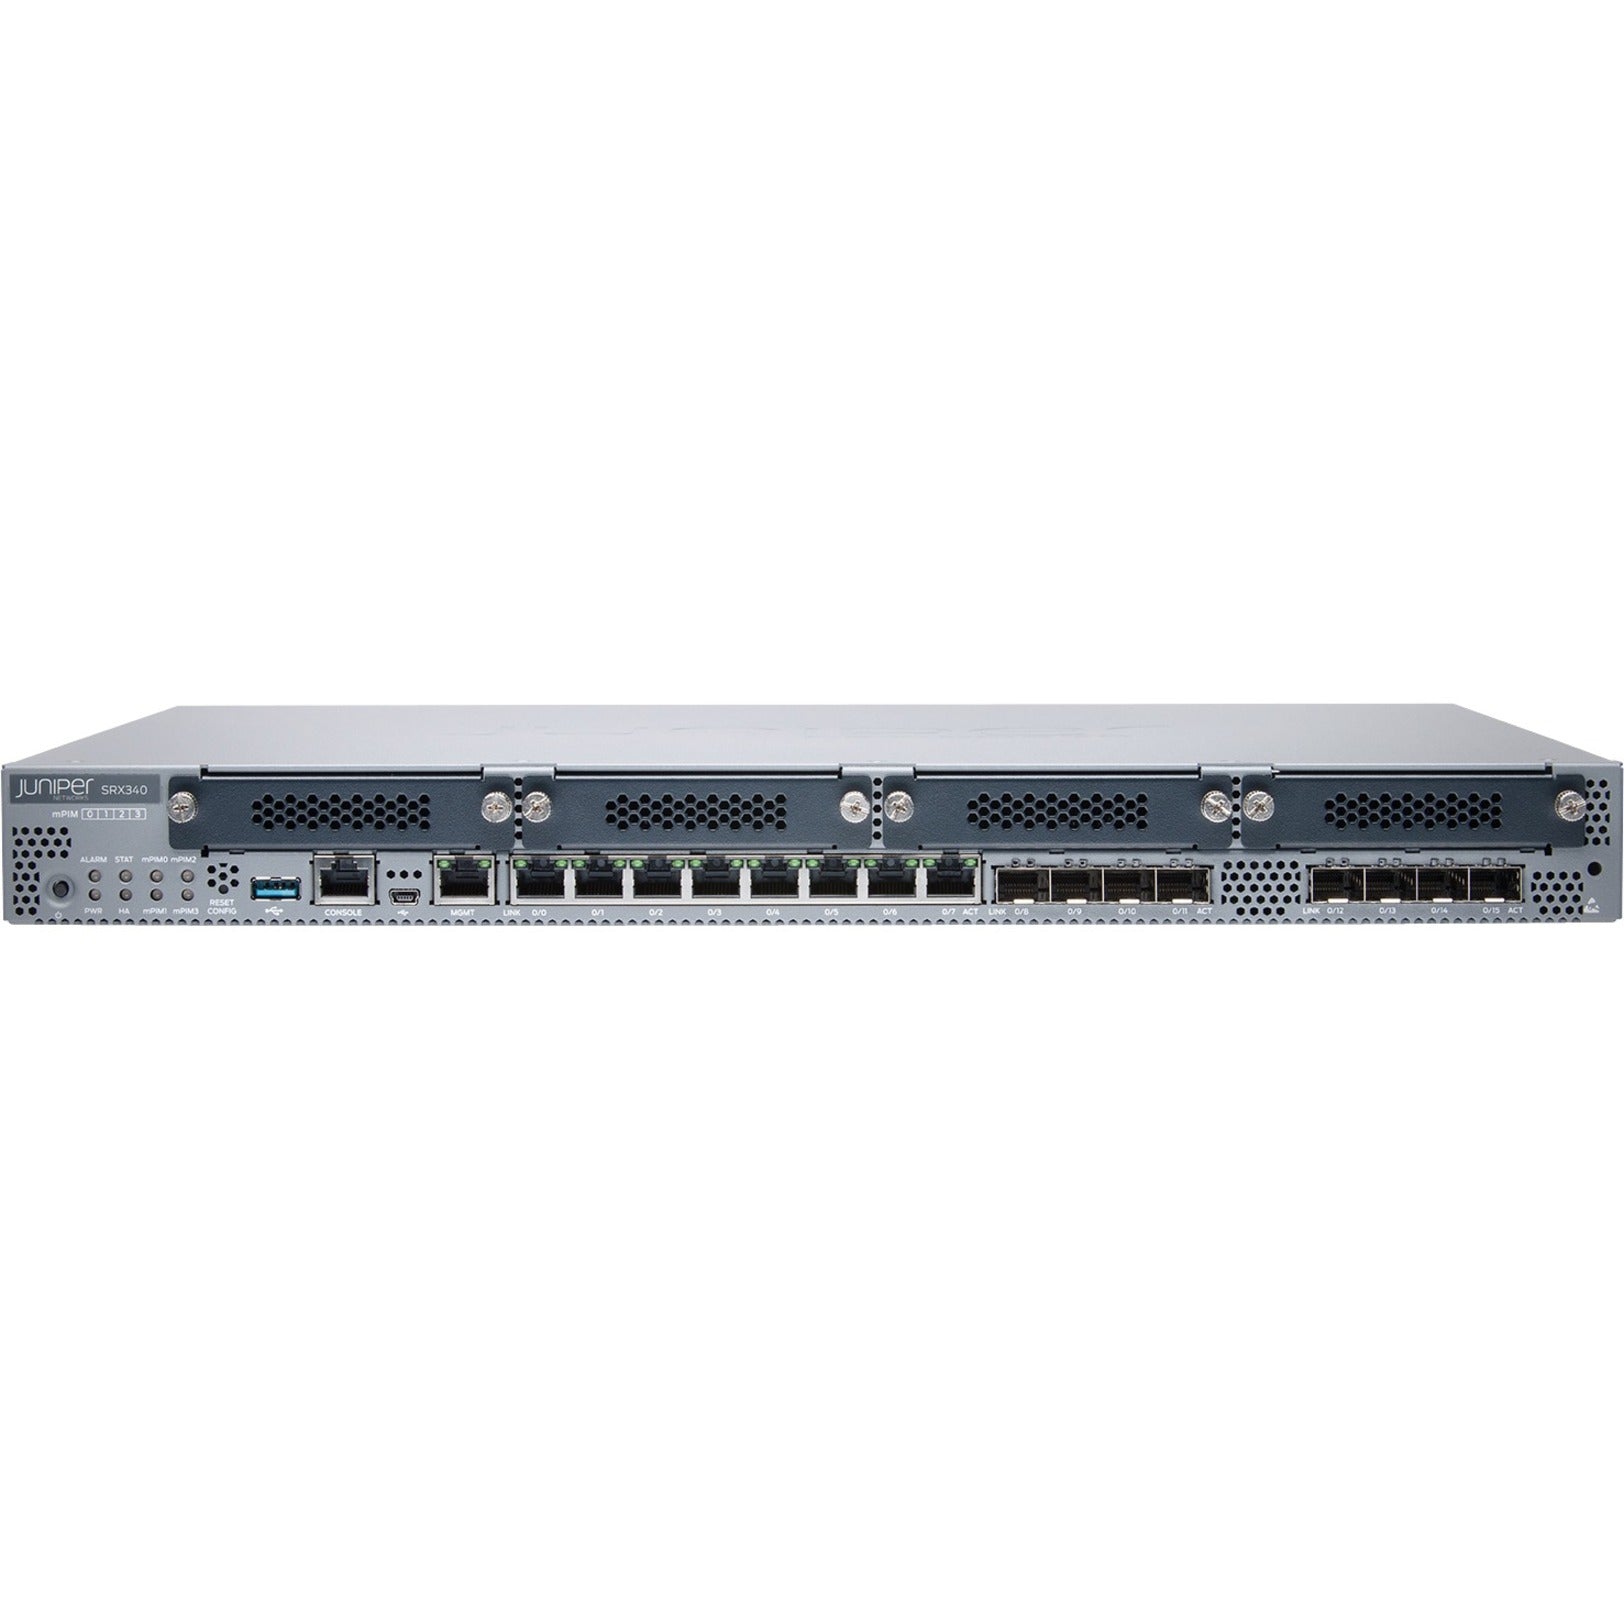 Juniper SRX340 Router, Gigabit Ethernet, 8 Ports, 1U Rack-mountable